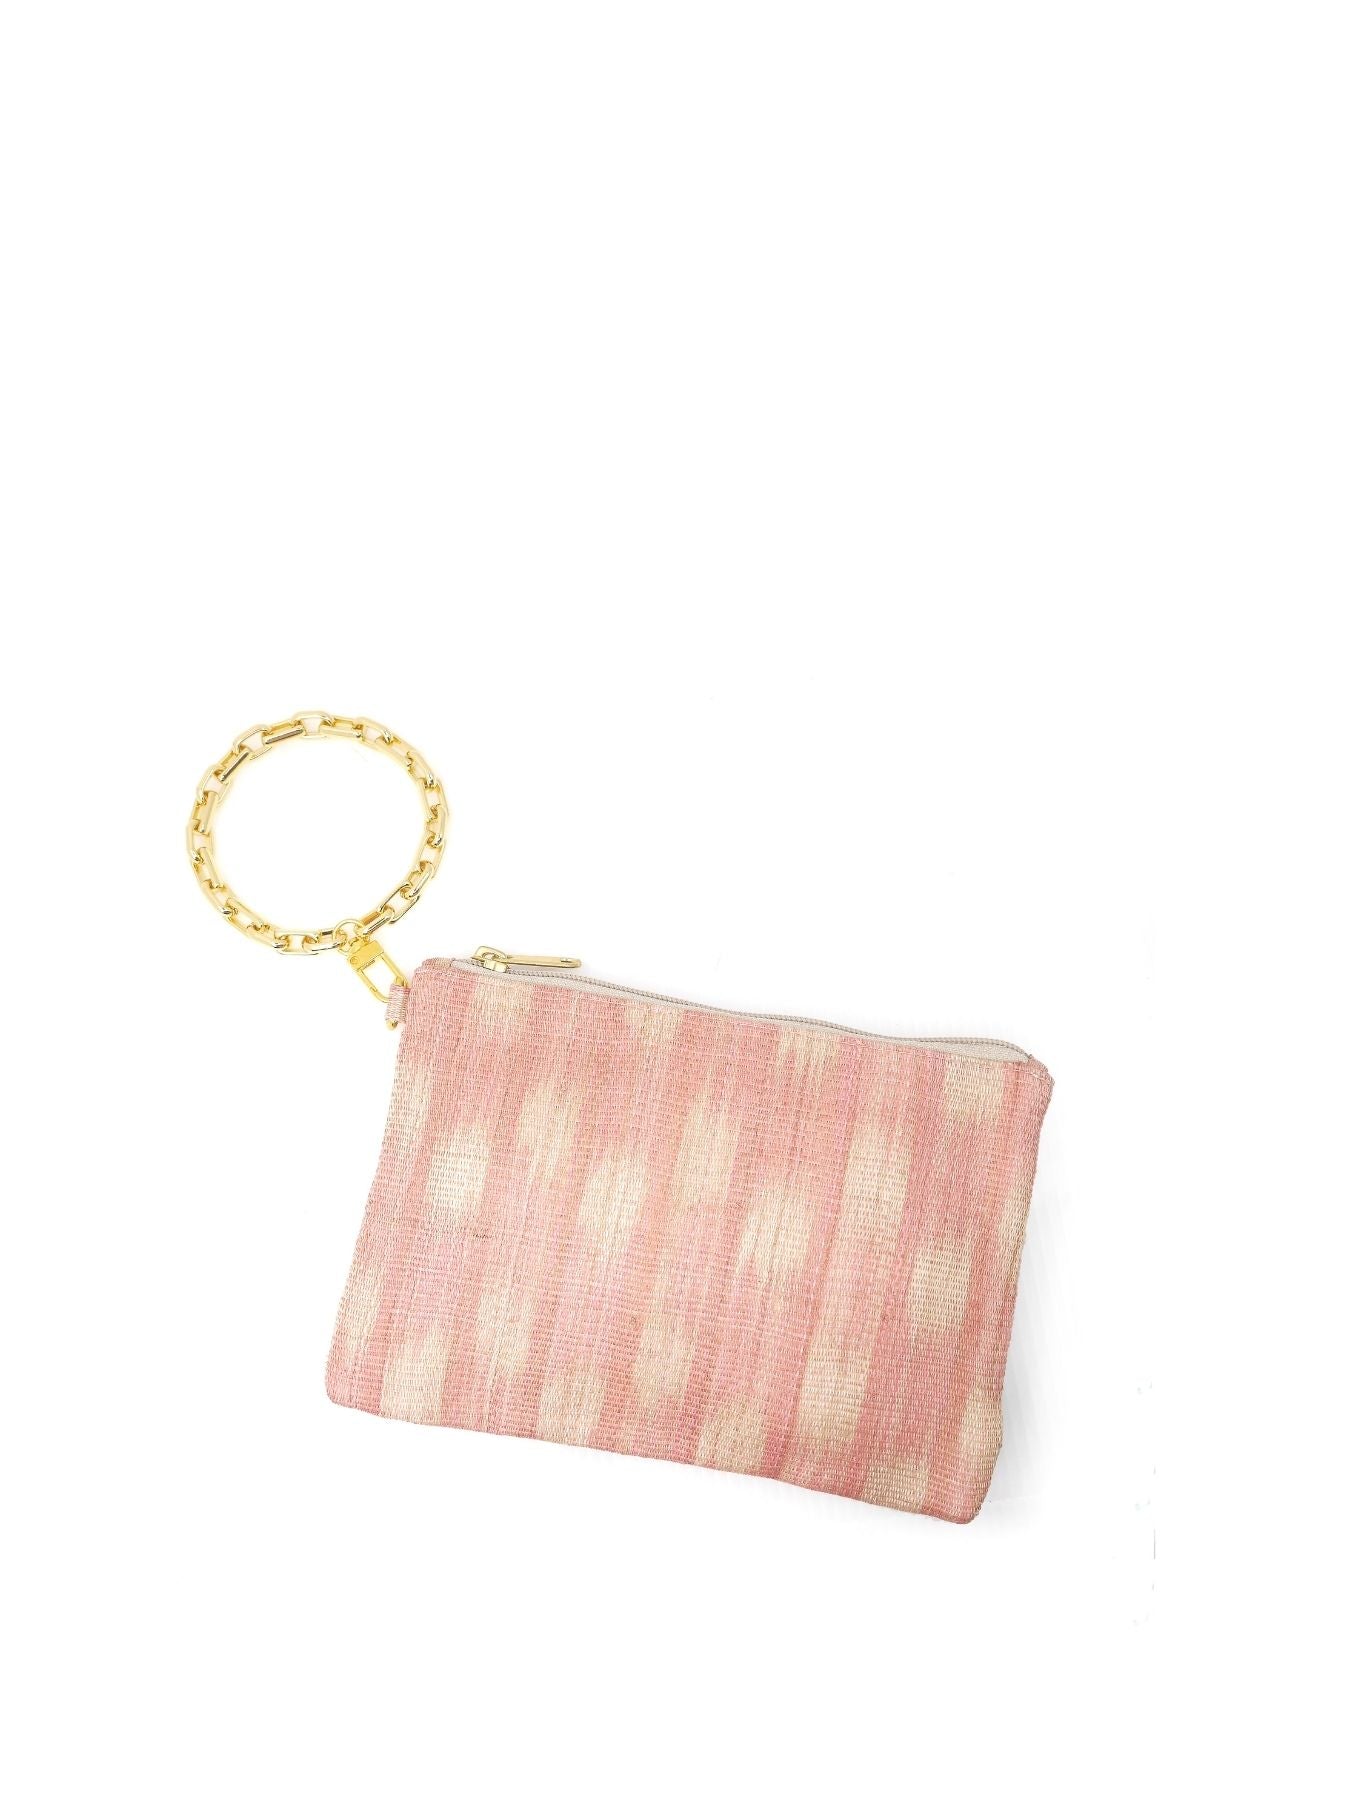 Steve Madden Handbag - light pink/pink - Zalando.de